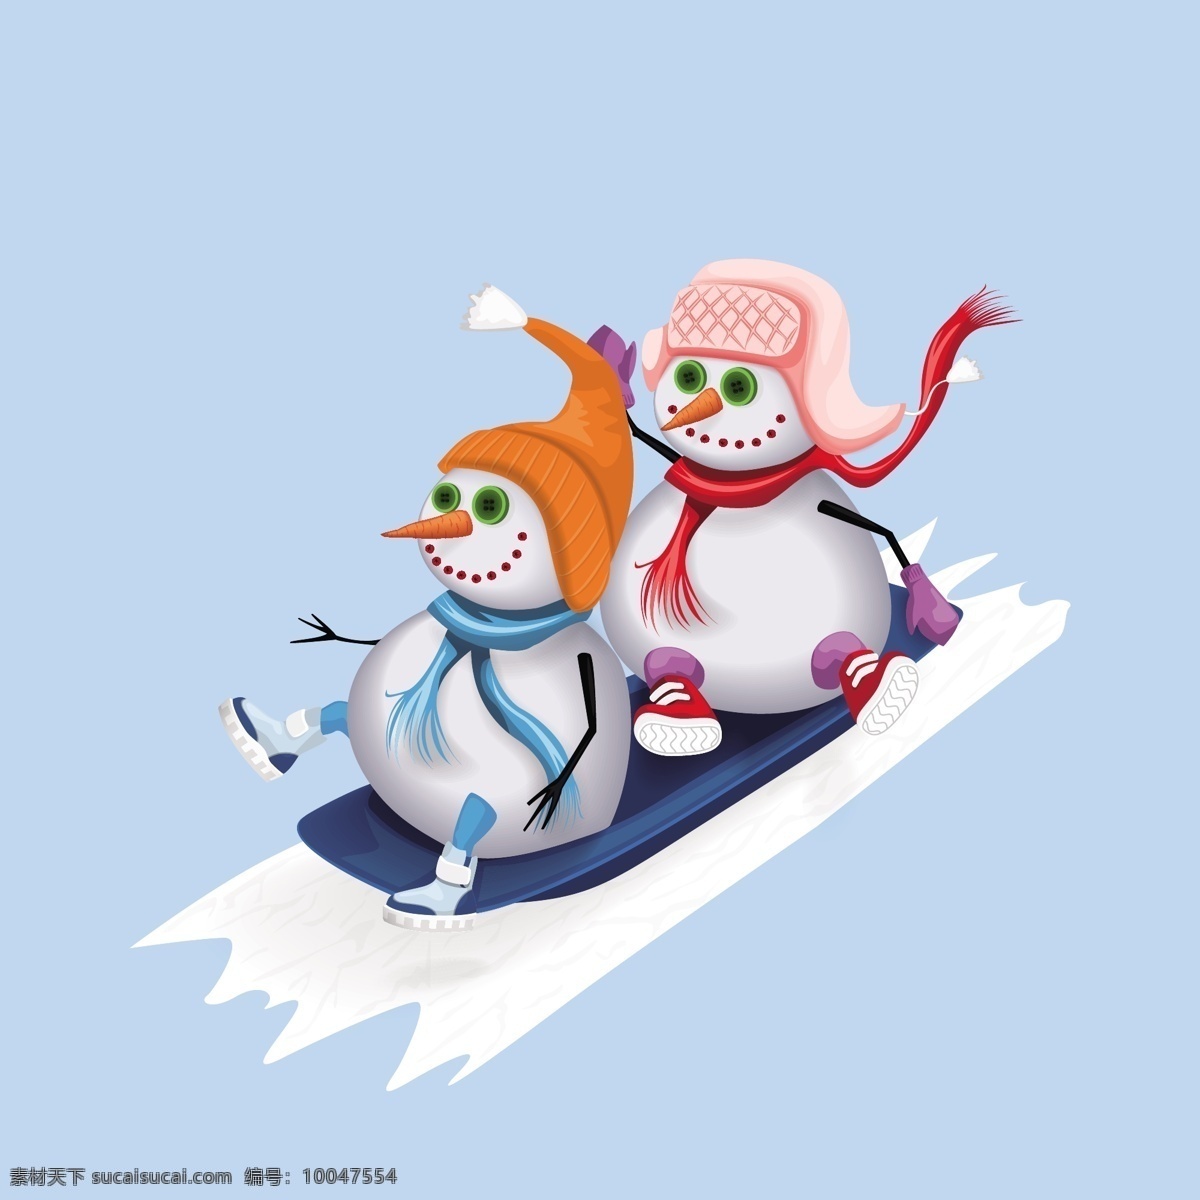 卡通 滑雪 雪人 滑雪的雪人 卡通雪人 卡通素材 雪人素材 好看的雪人